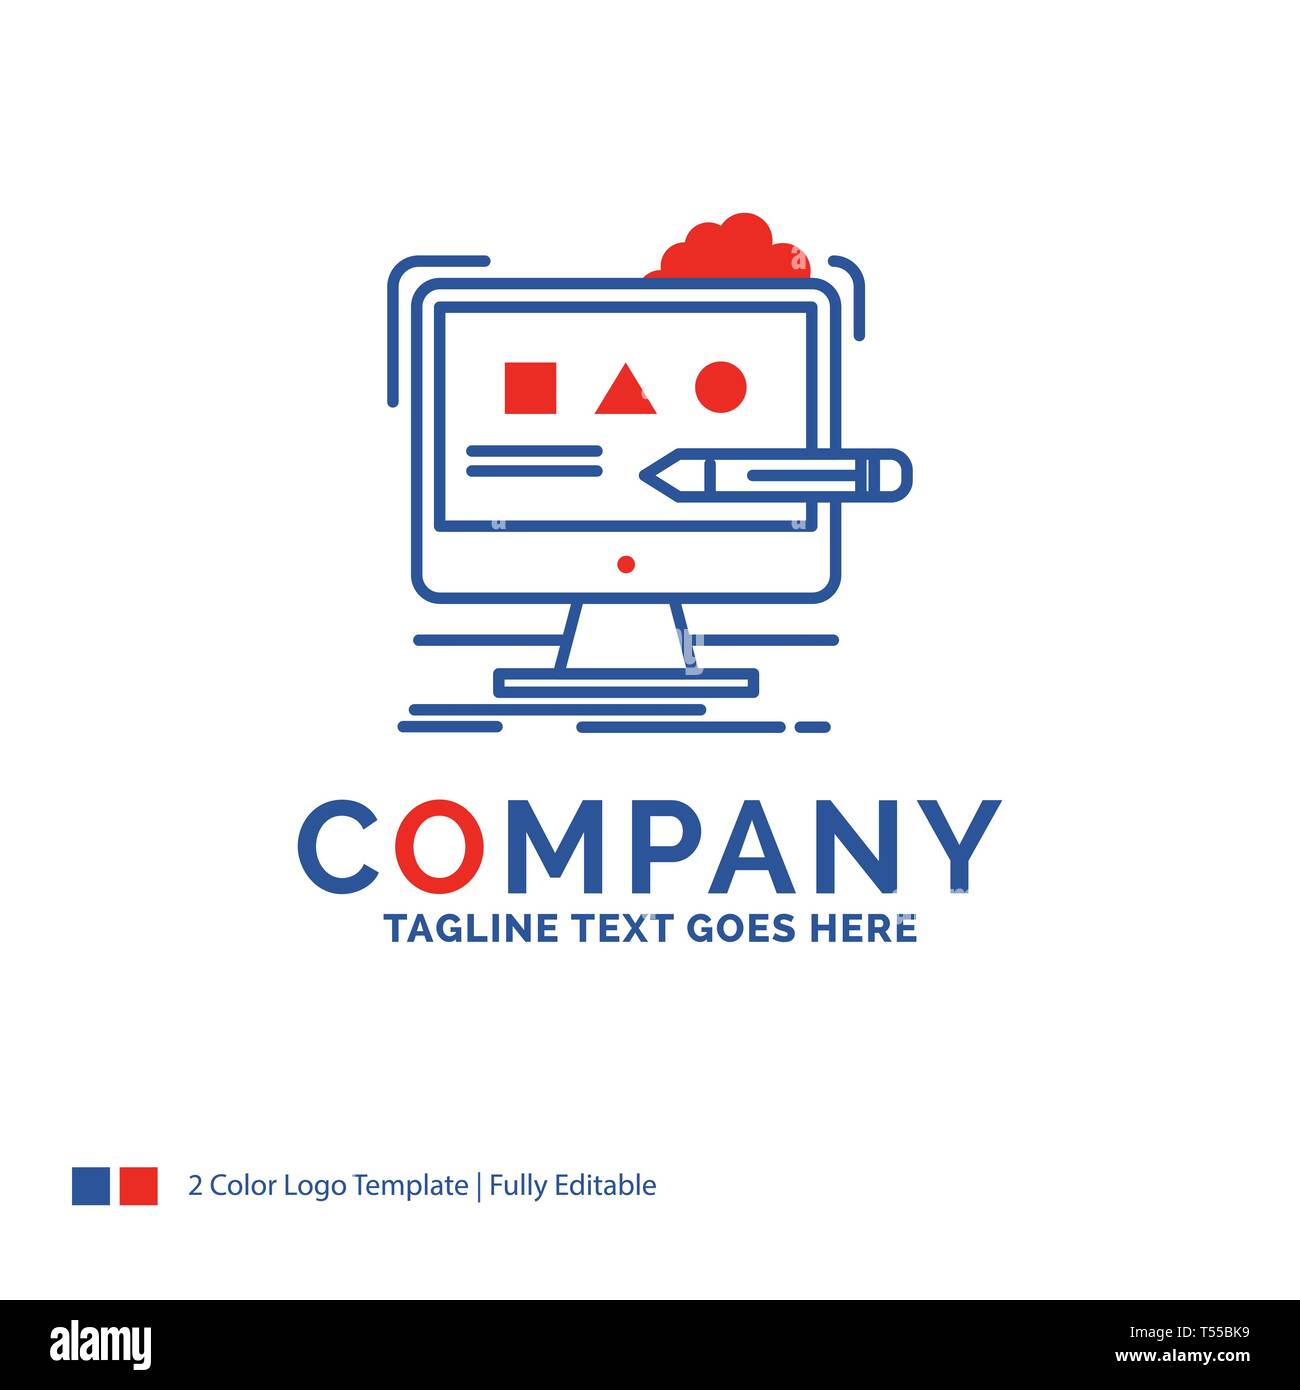 Company Name Logo Design For Art Computer Design Digital